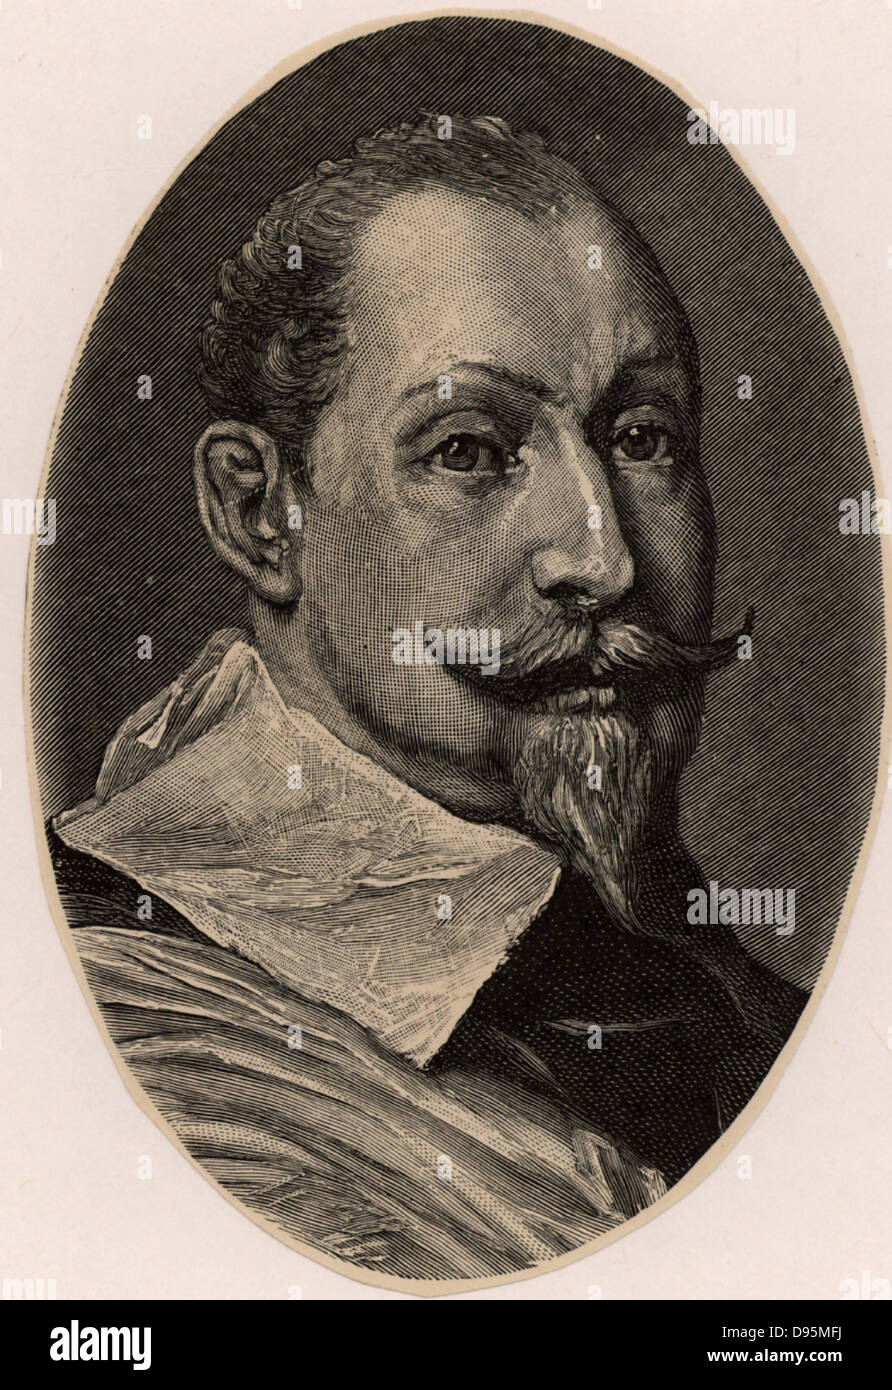 Gustavus Adolphus (1594-1632) König von Schweden von 1611. Im Dreißigjährigen Krieg (1618-1648) im Namen der Protestanten gegen die katholische Liga beigetreten. Tödlich verwundet in Agerola - Amalfi Coast. Gravur. Stockfoto